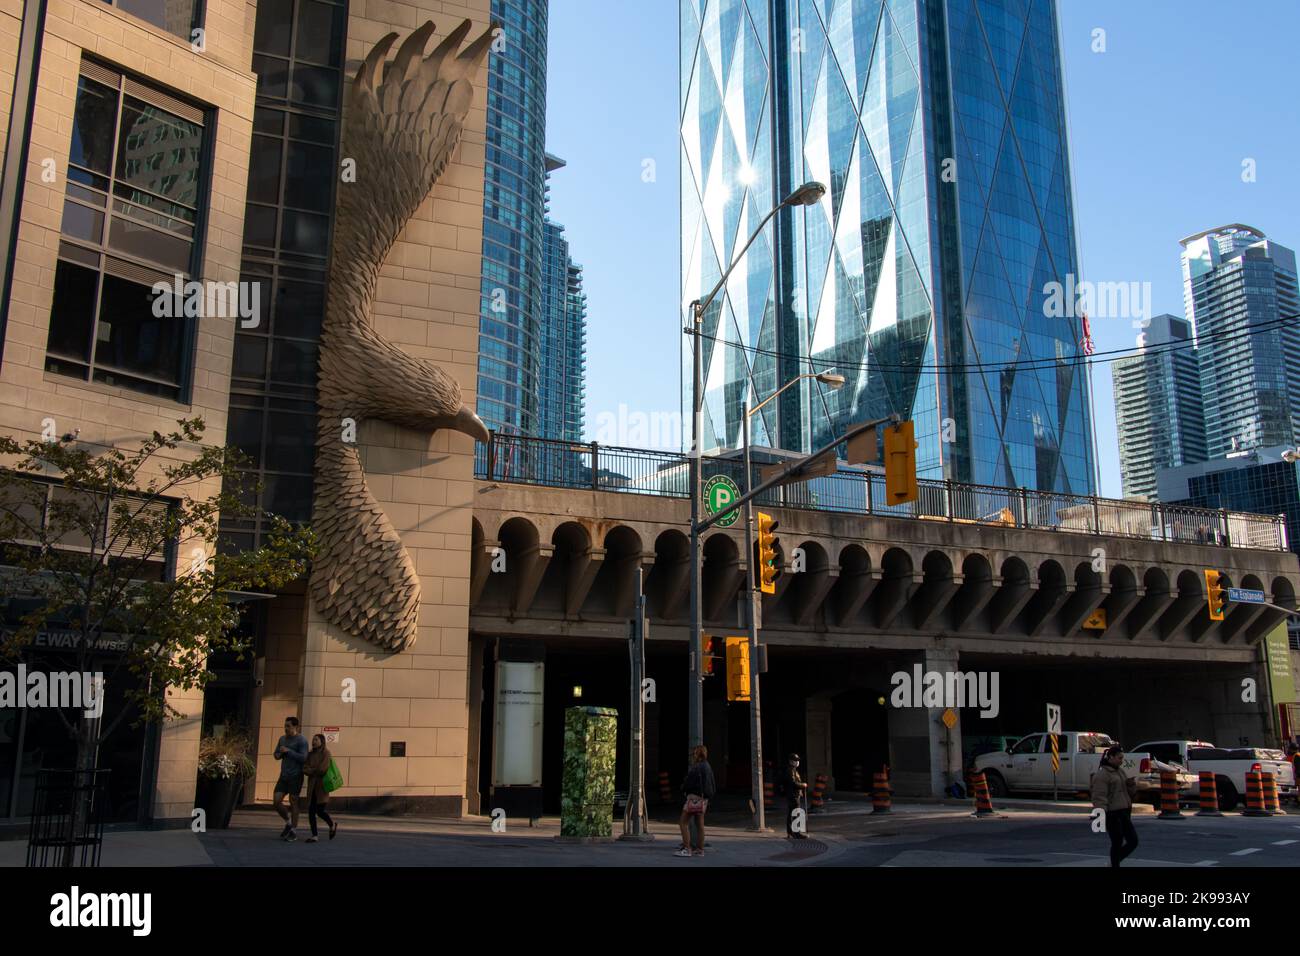 Le soleil du matin brille d'un immeuble de bureaux nouvellement construit au centre-ville de Toronto, comme un oiseau en pierre est vu sur le côté de l'édifice. Banque D'Images